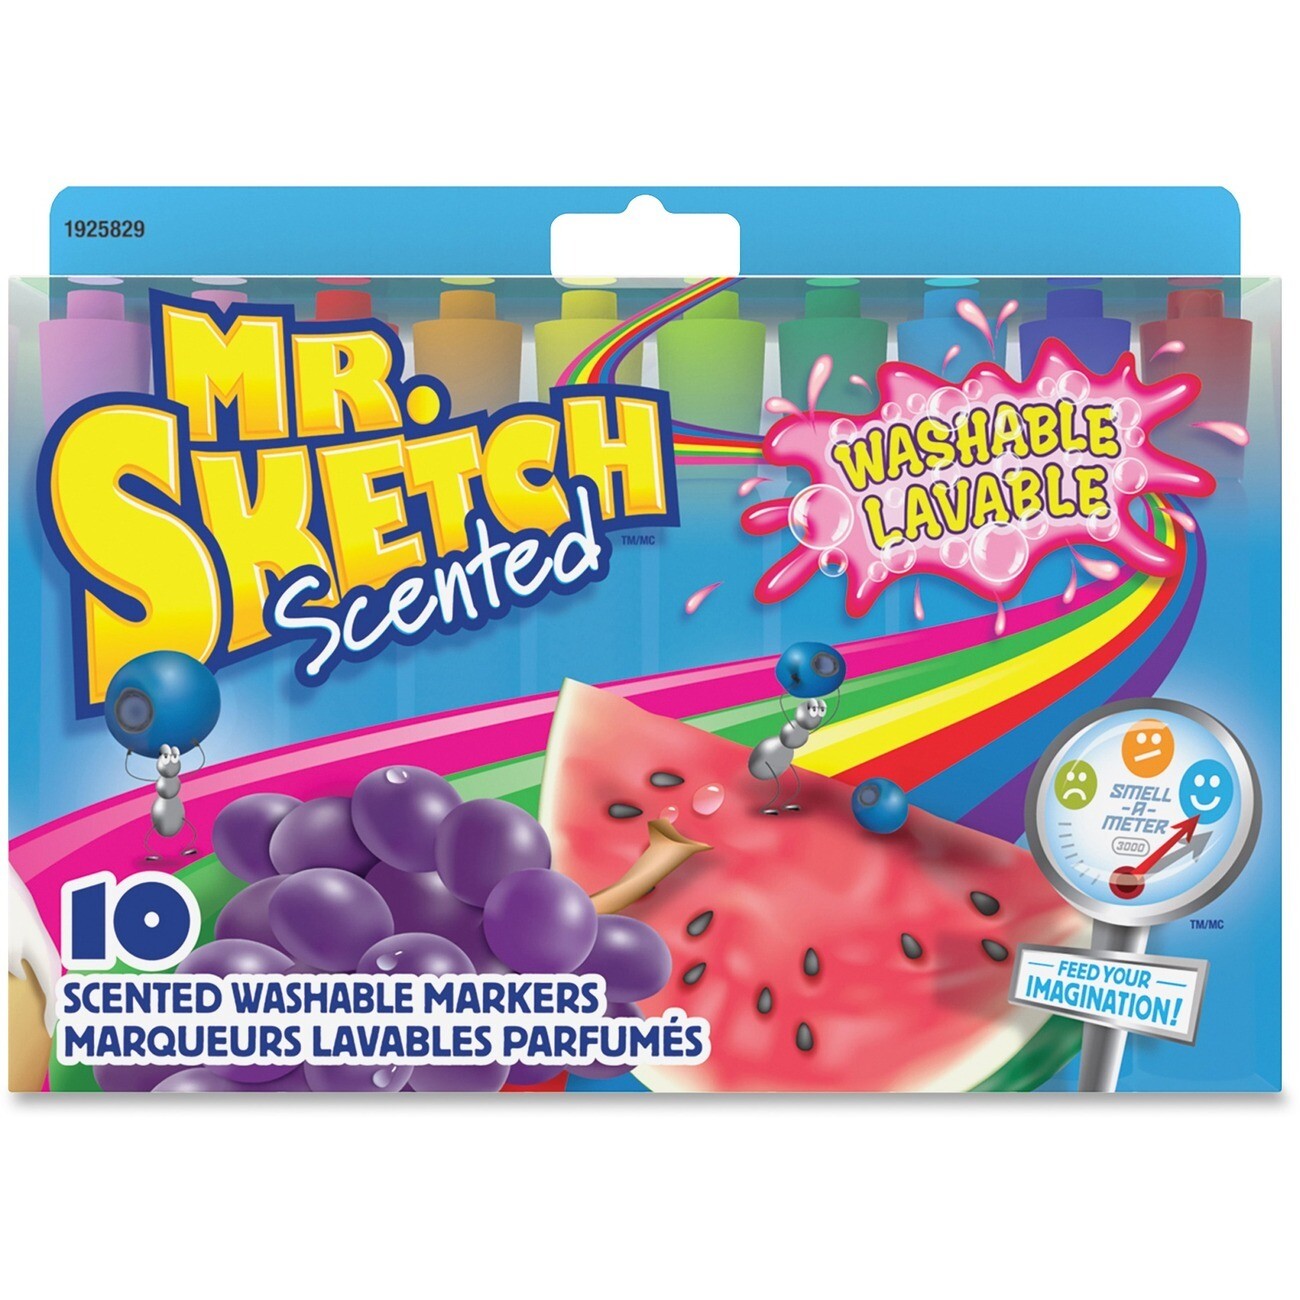 Marker, Mr. Sketch Washable, 10 Pack